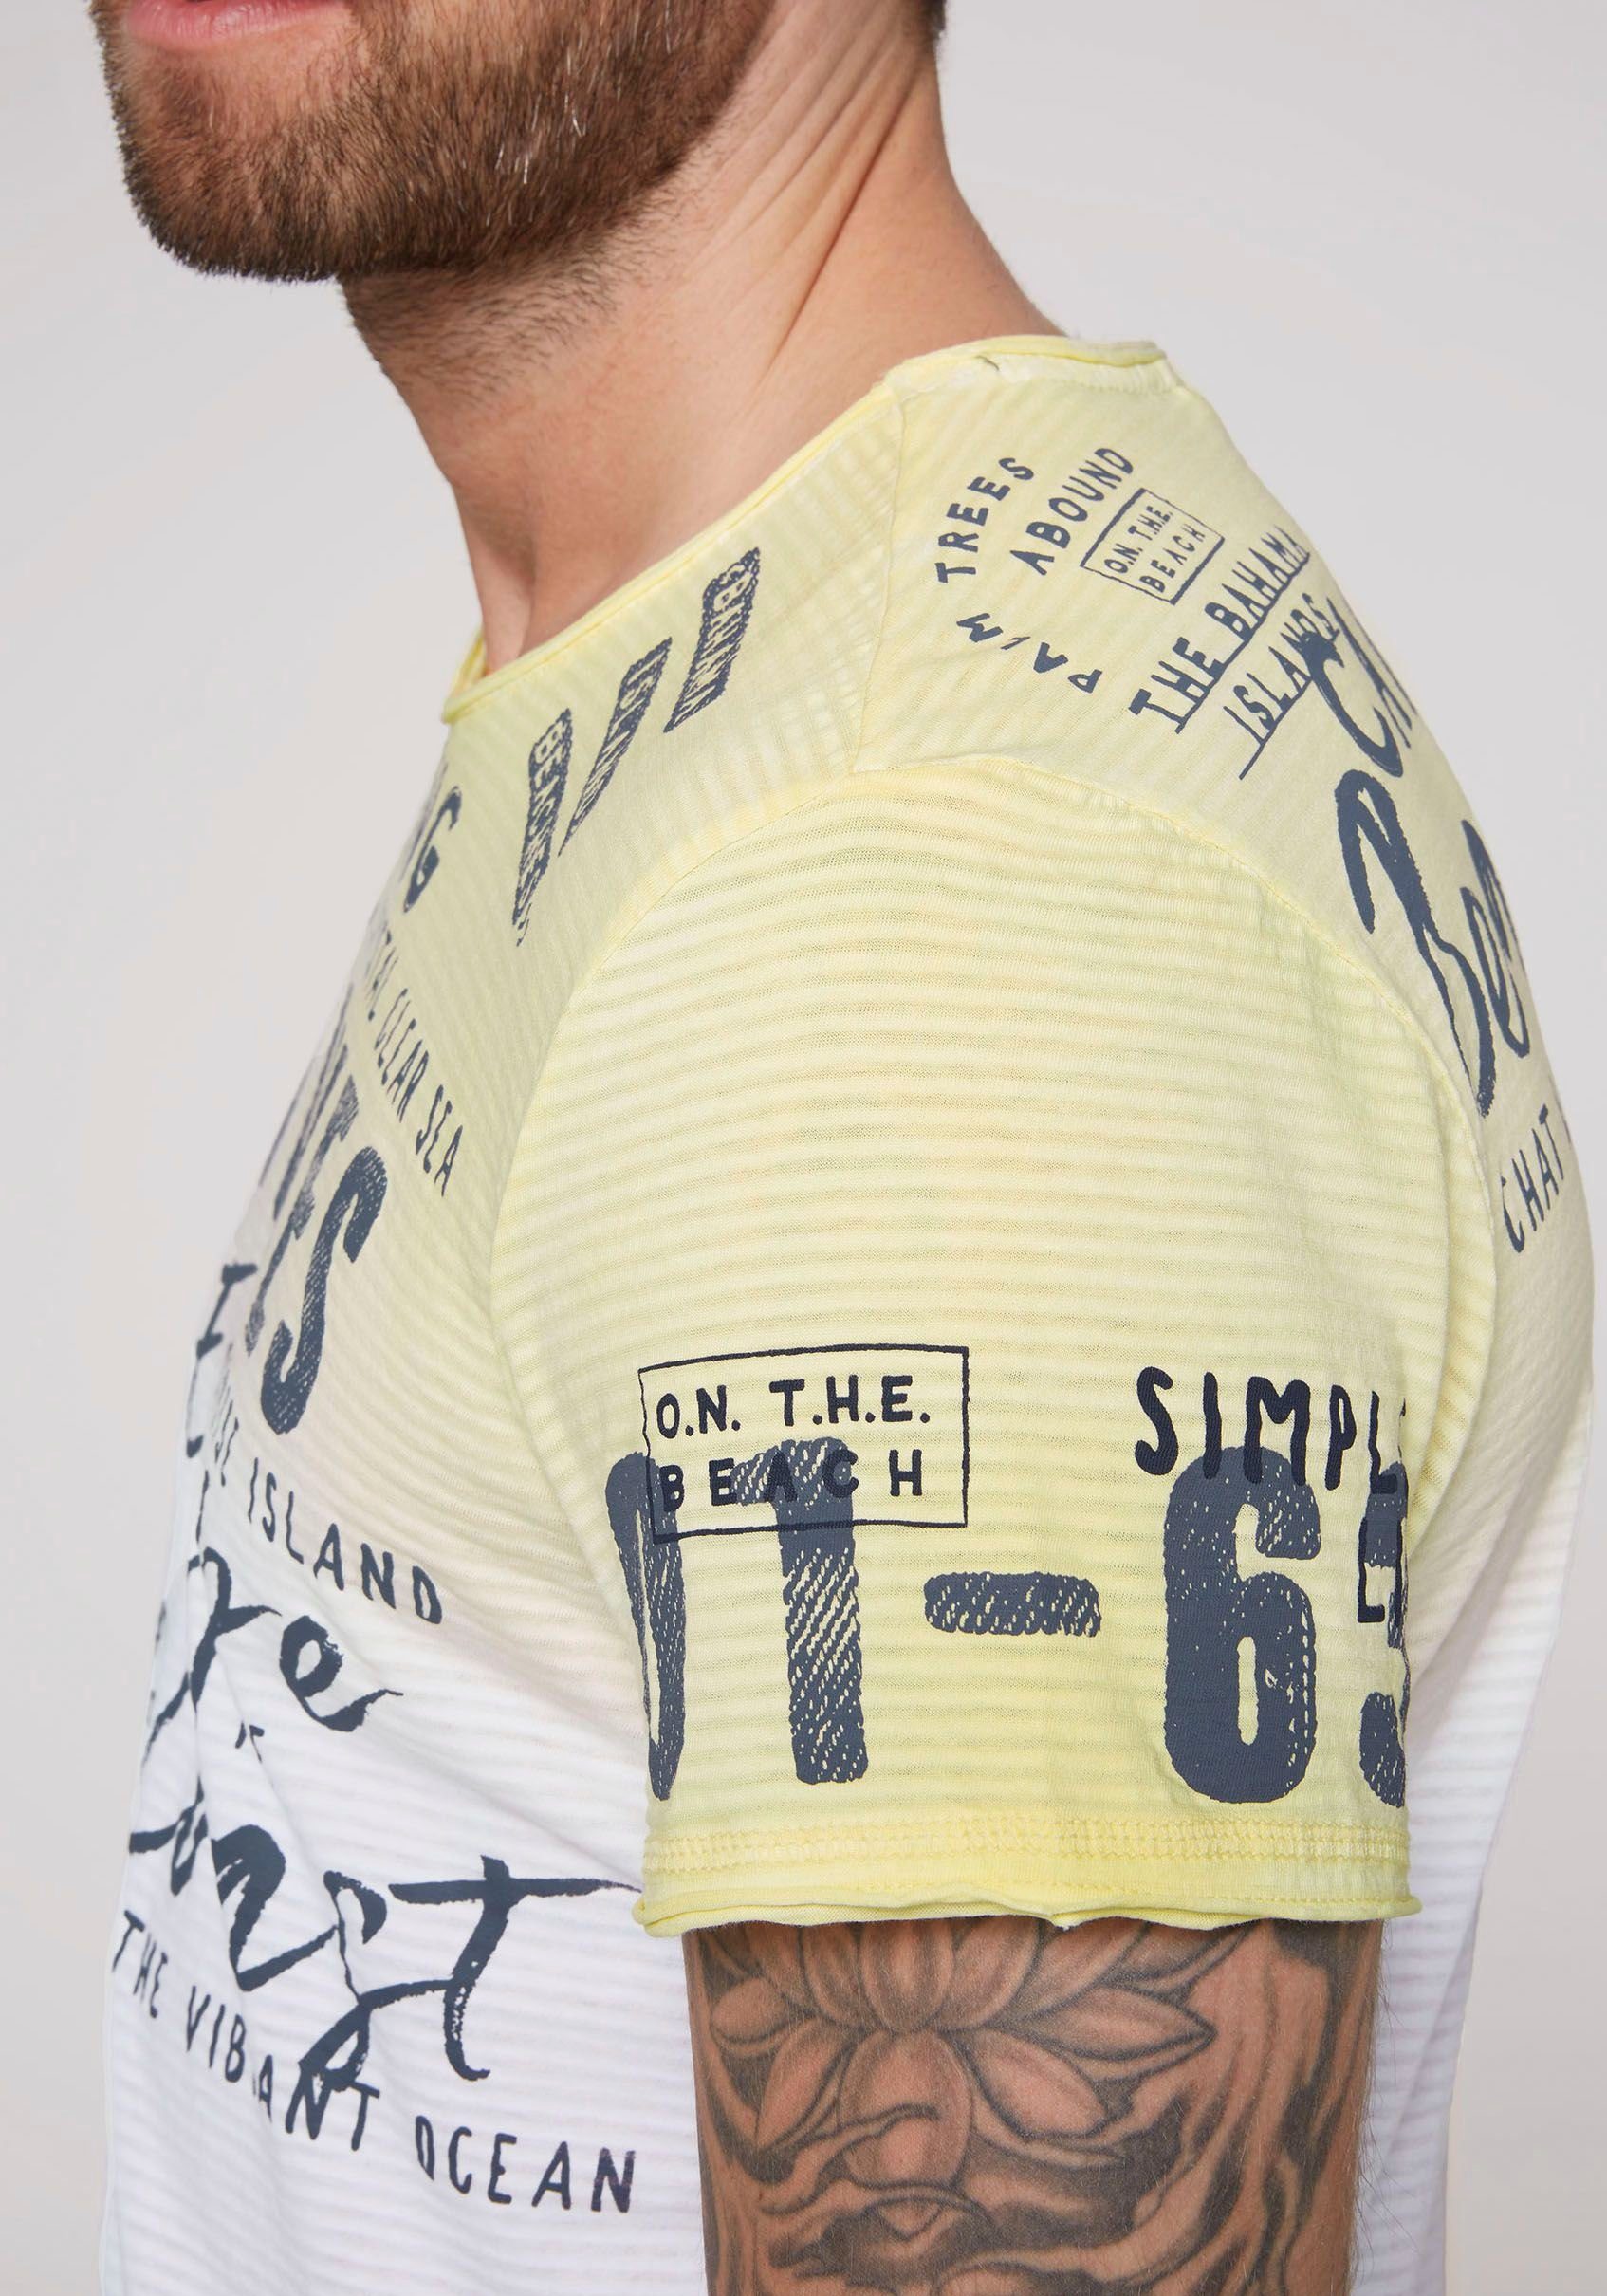 DAVID Schriftzügen banana T-Shirt sun CAMP mit